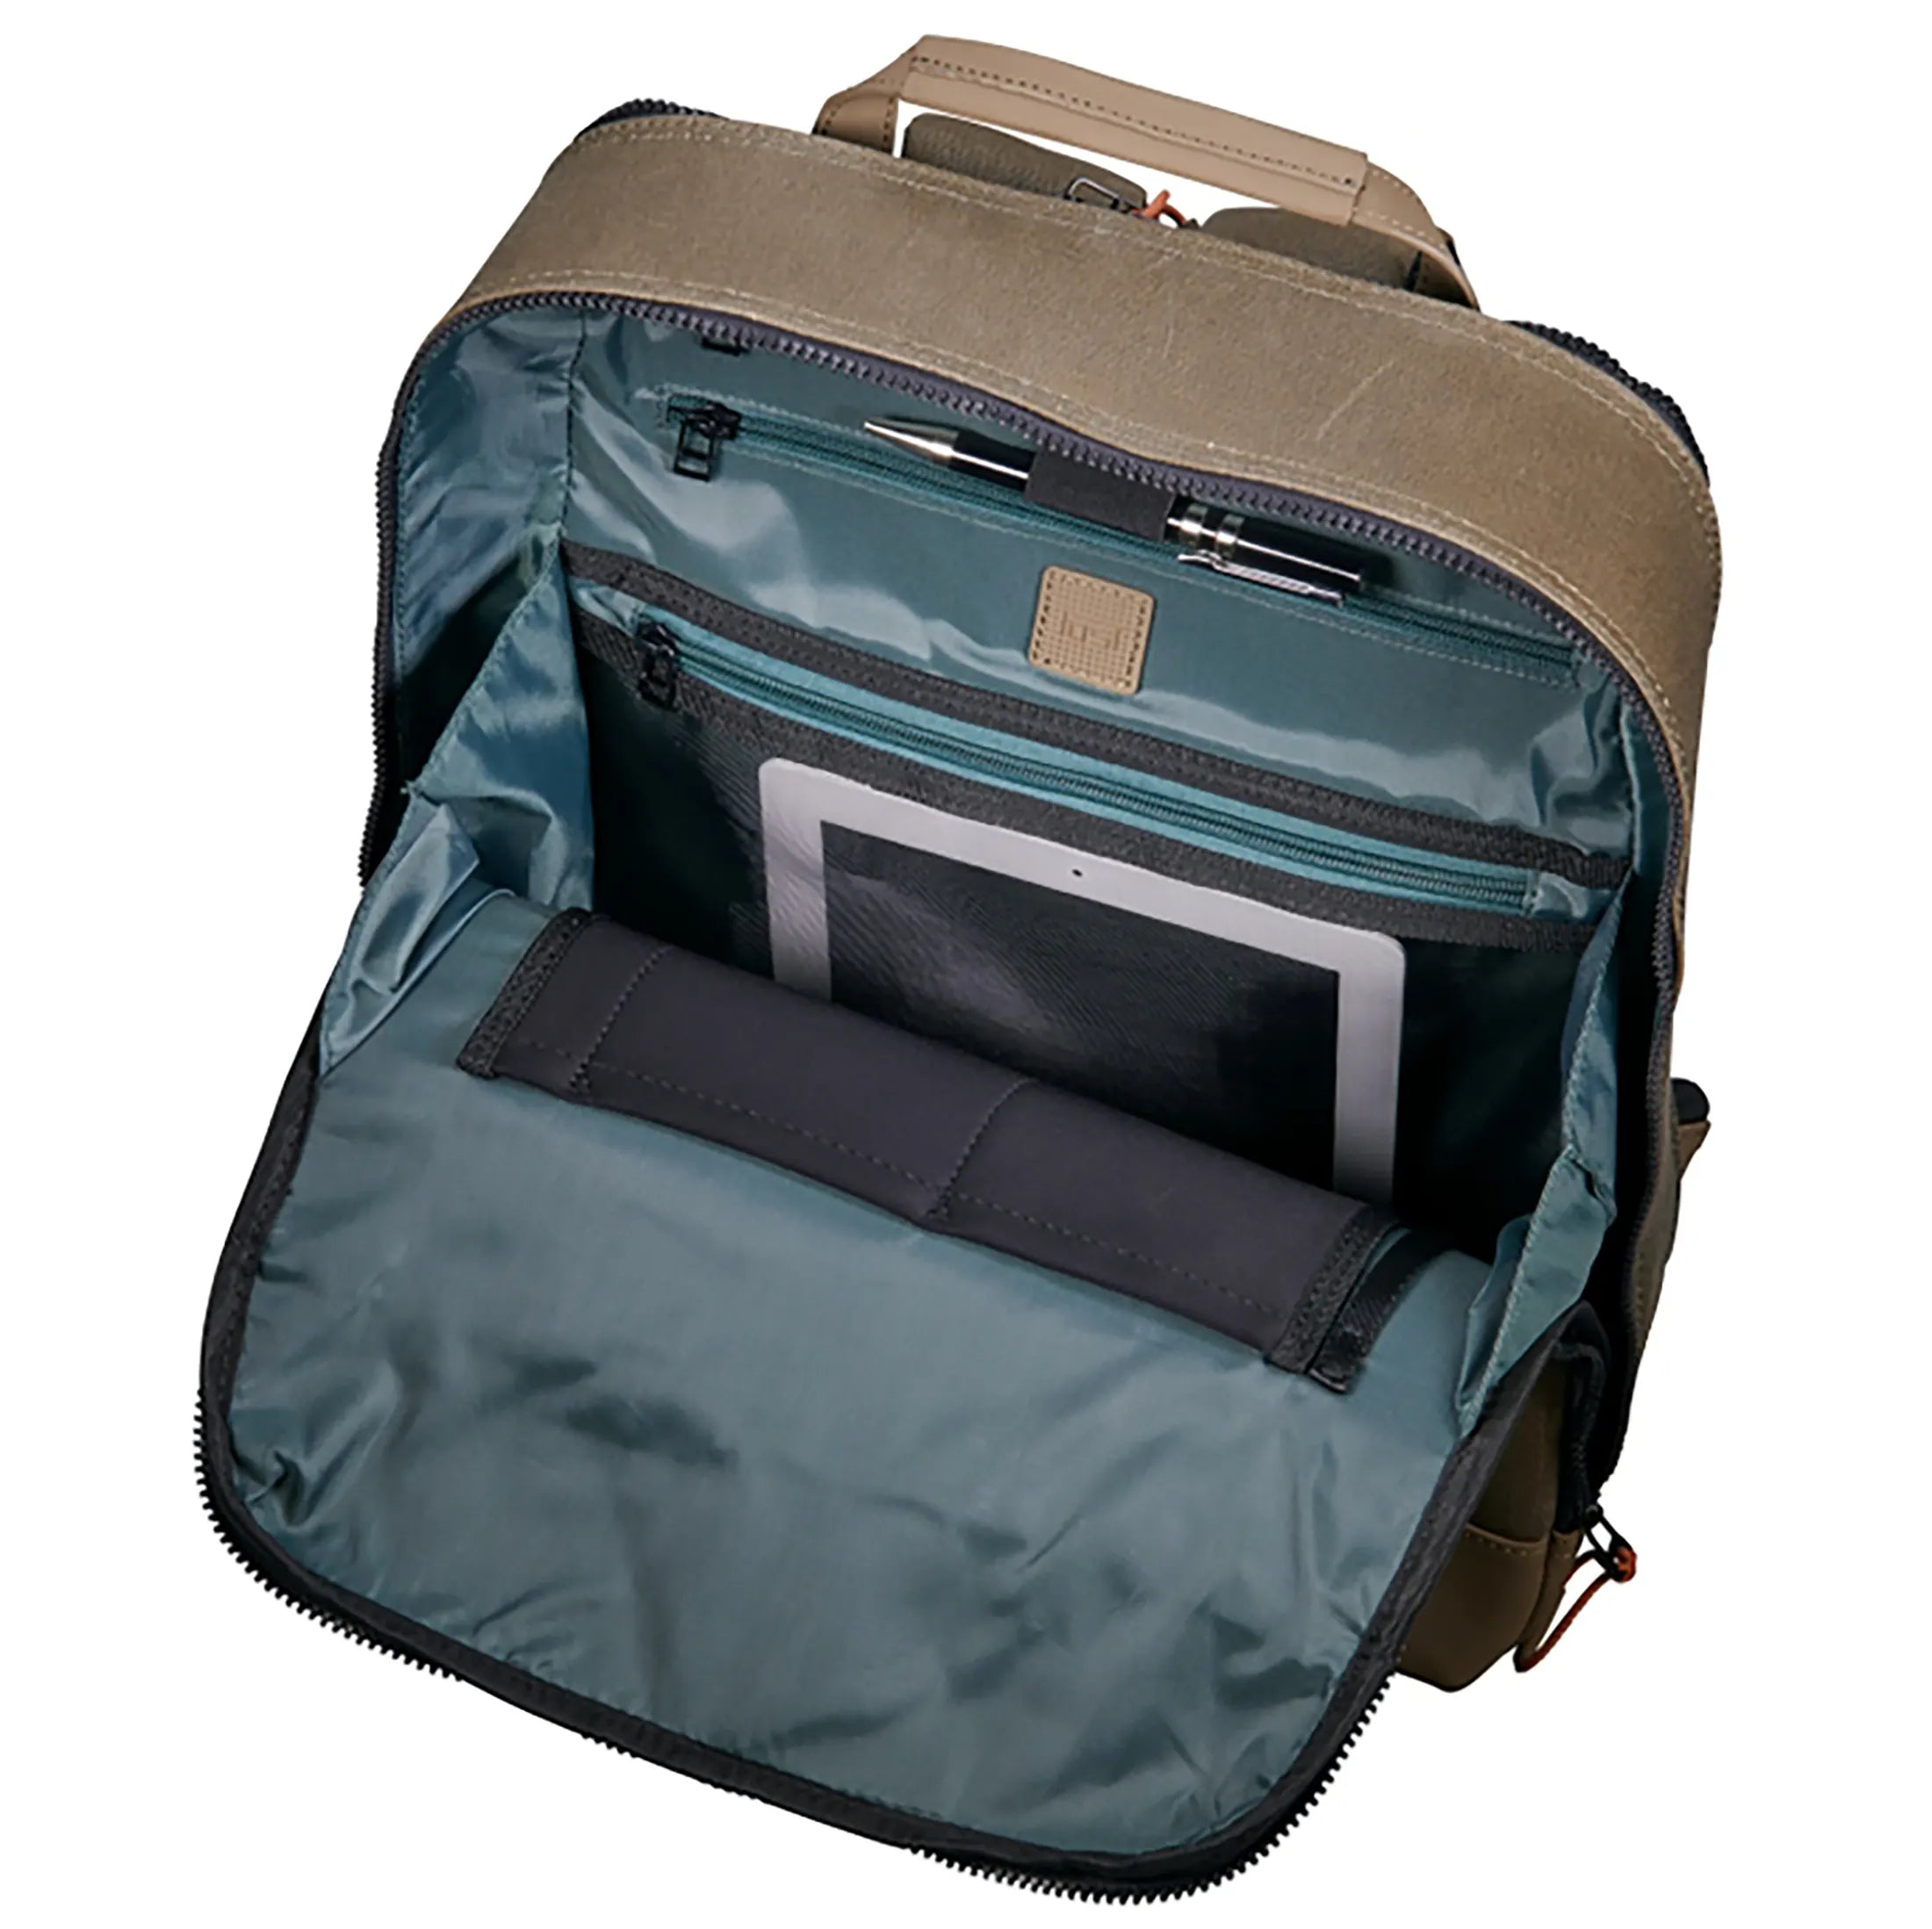 Jost Ystad Daypack-Rucksack mit Laptopfach 44 cm - olive